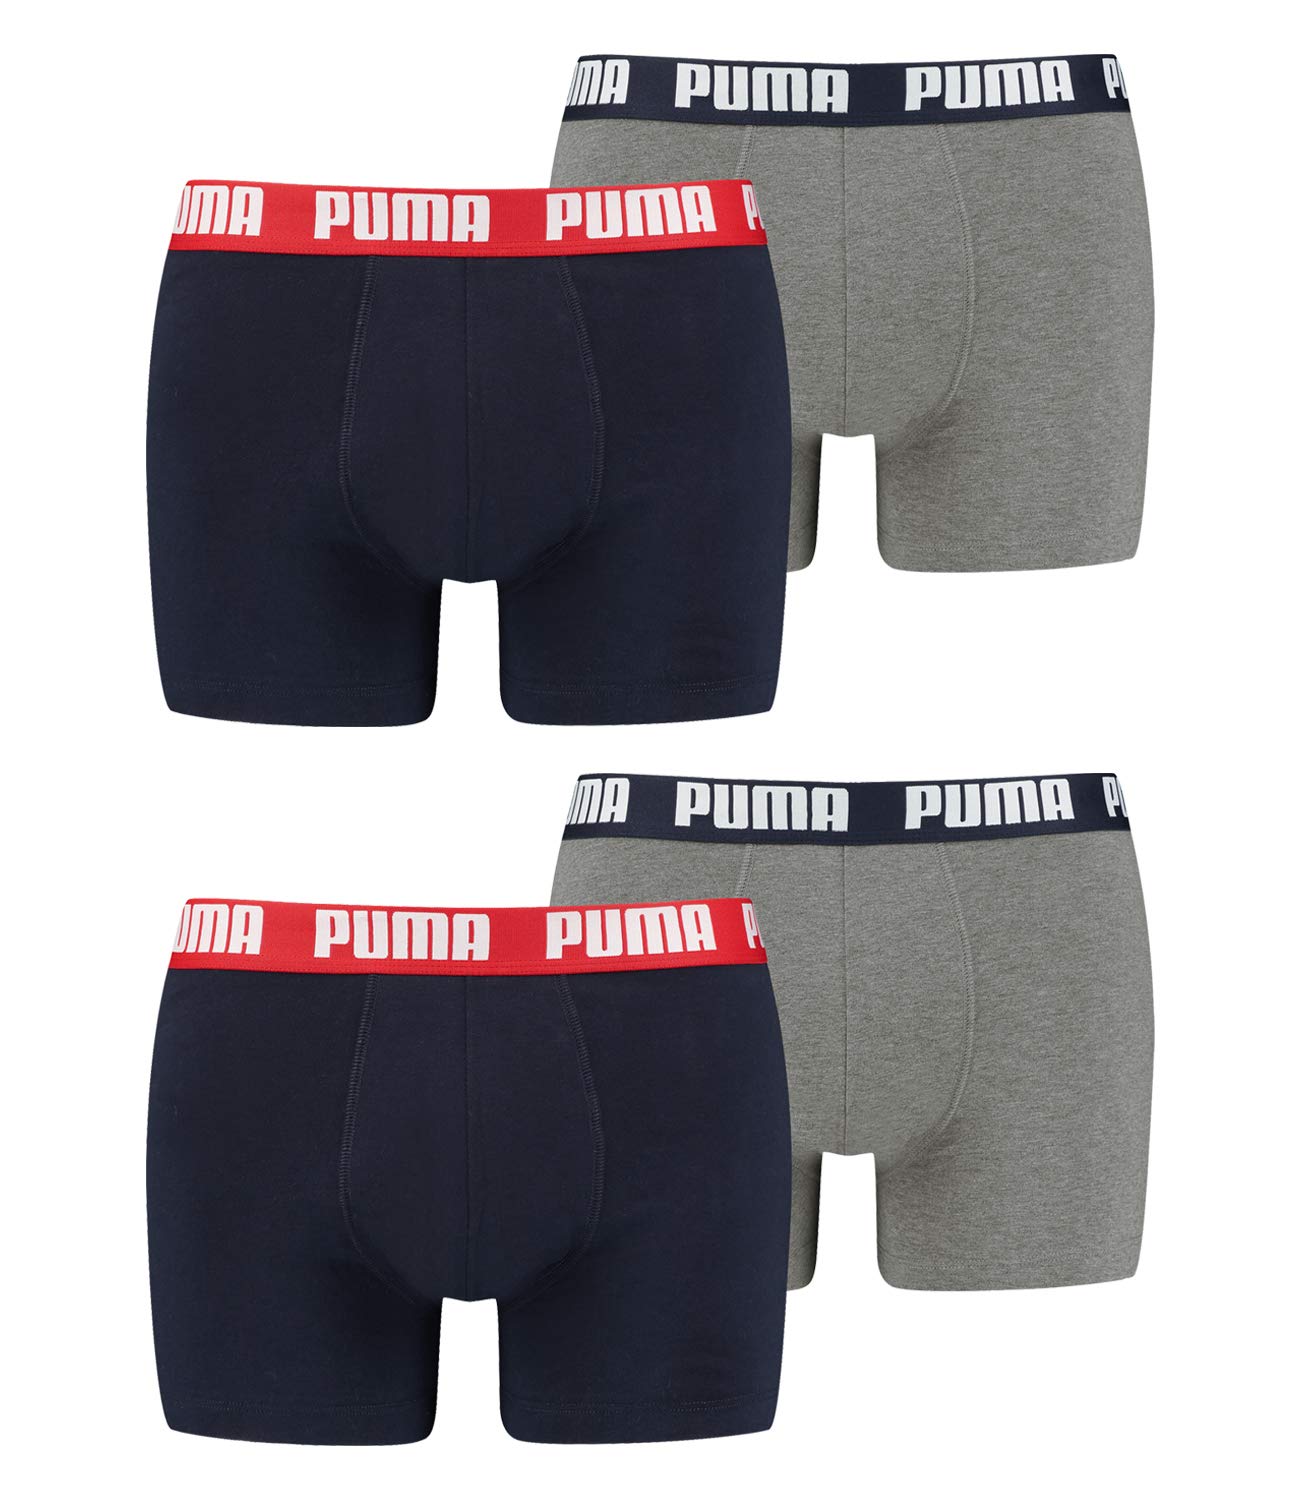 PUMA 4 er Pack Boxer Boxershorts Men Herren Unterhose Pant Unterwäsche, Farbe:036 - Blue/Grey Melange, Bekleidungsgröße:L